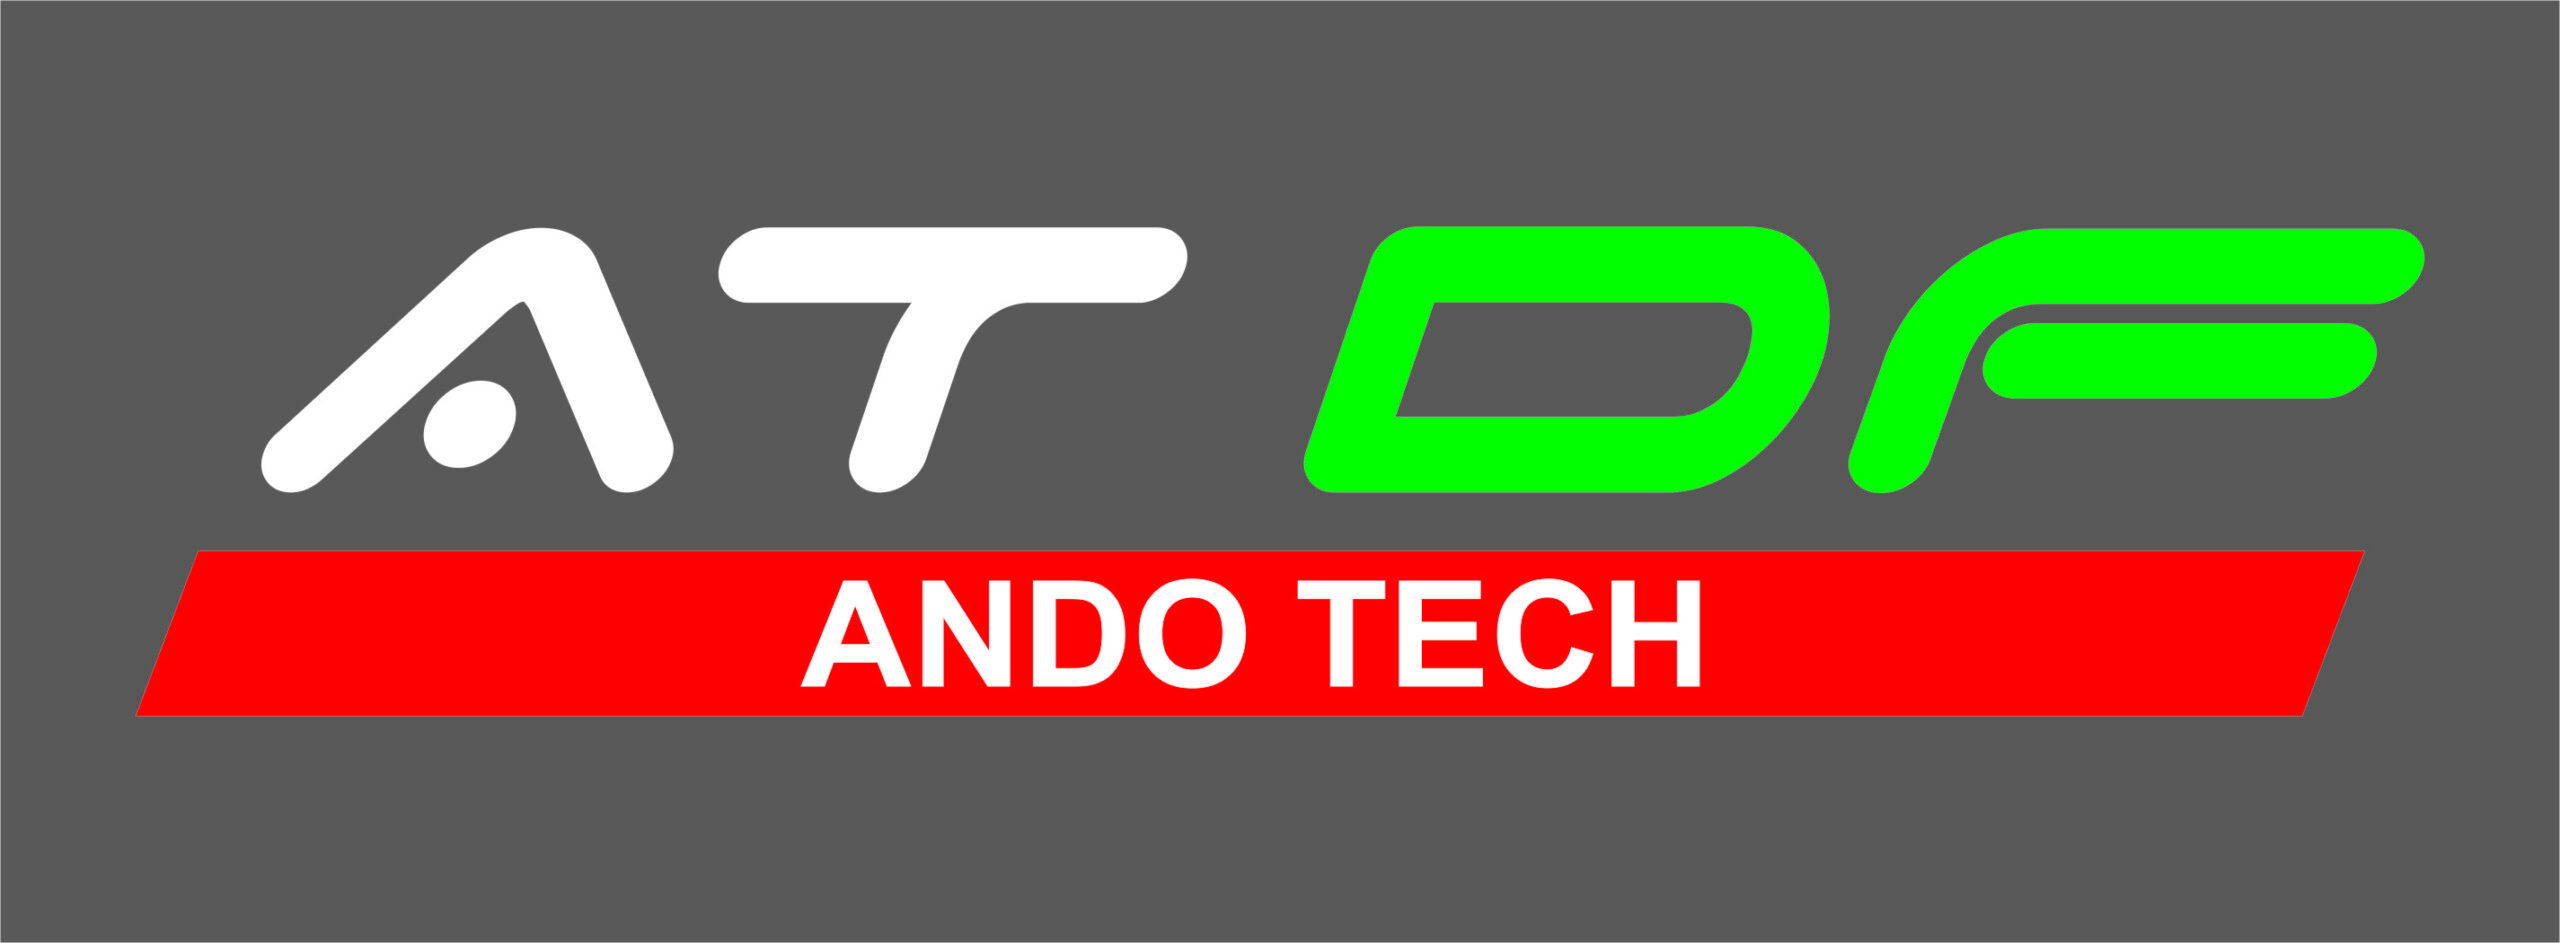 Ando-Tech